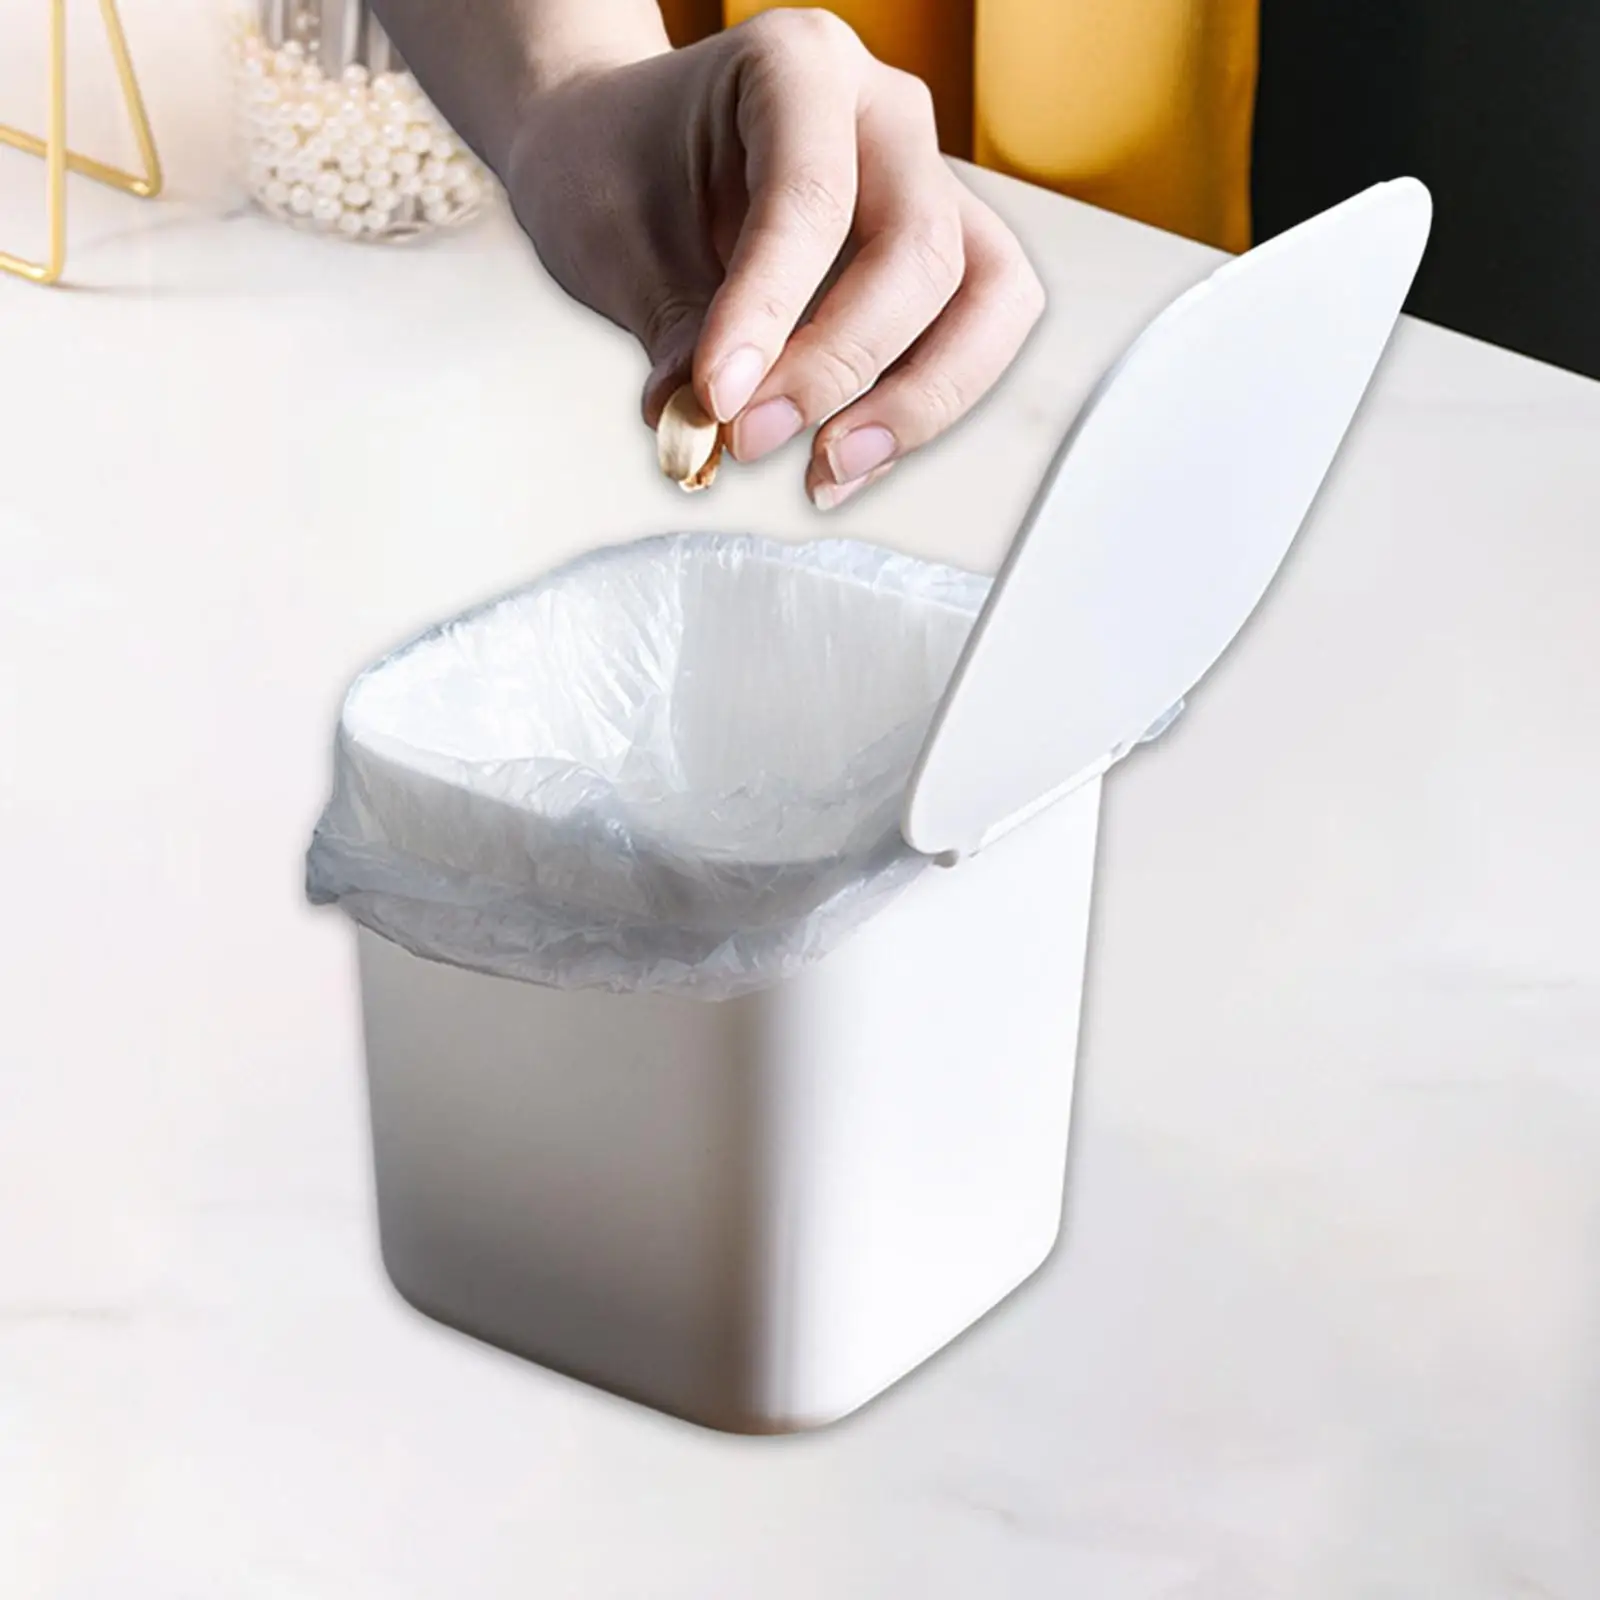 Mini Trash Can with Lid Wastebasket Counter Garbage Bin Creative Little Garbage Cans for Desk Dresser Bathroom Bedside